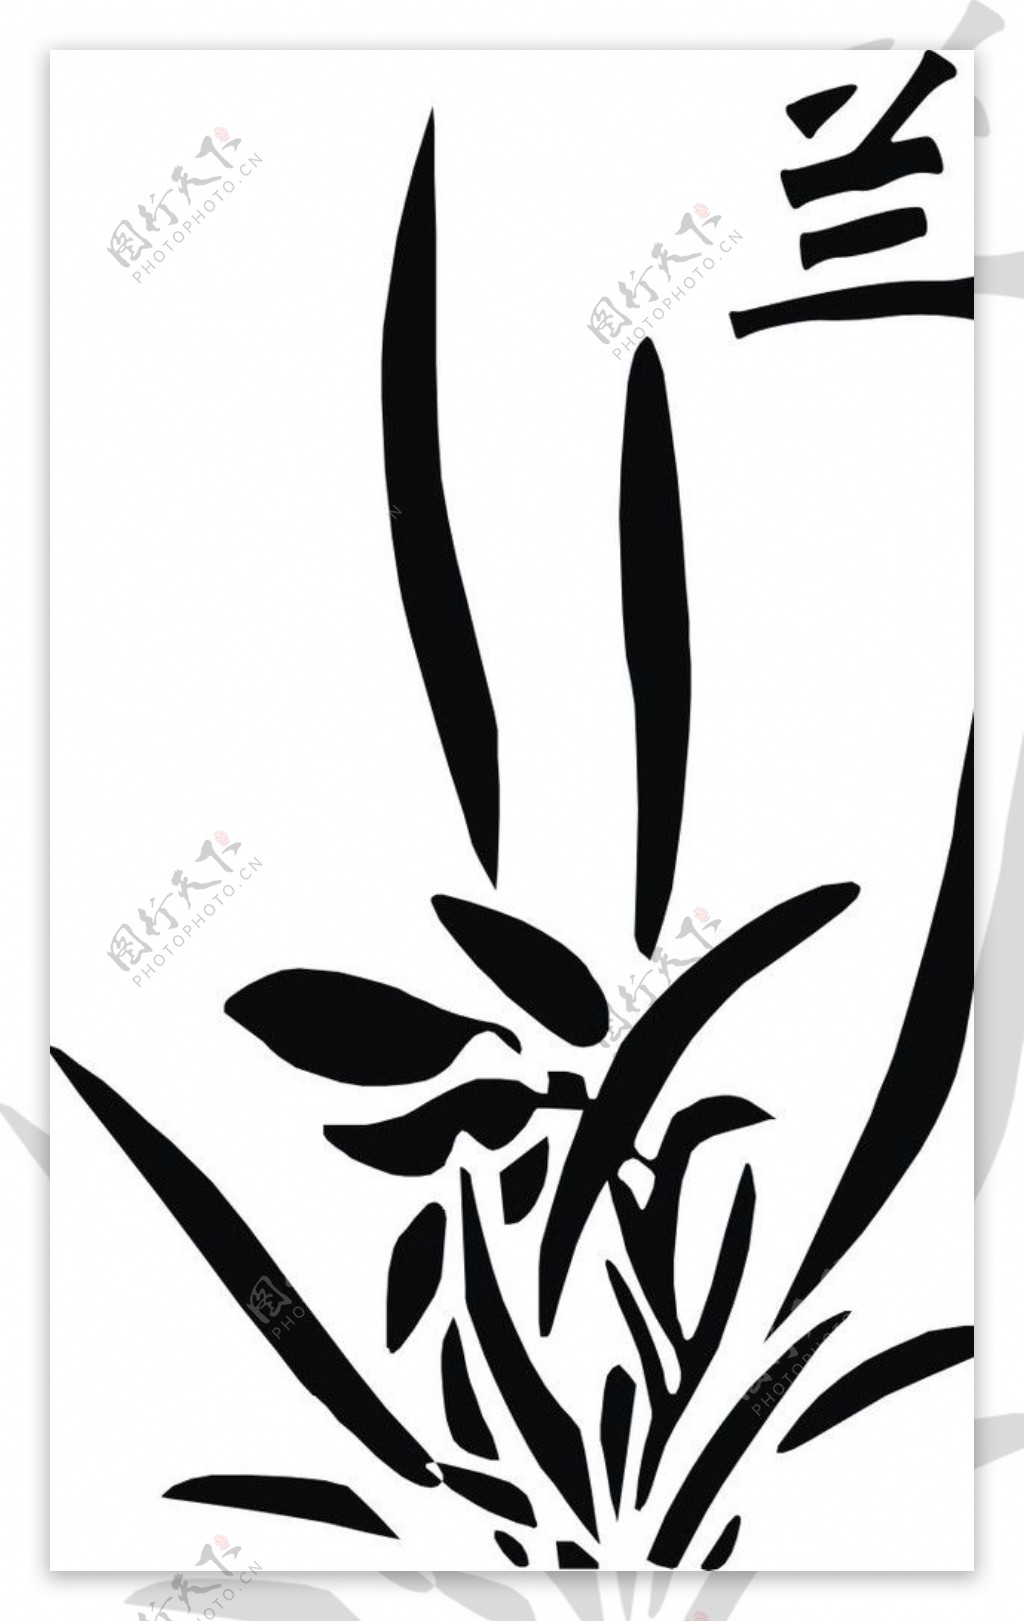 兰花logo图片